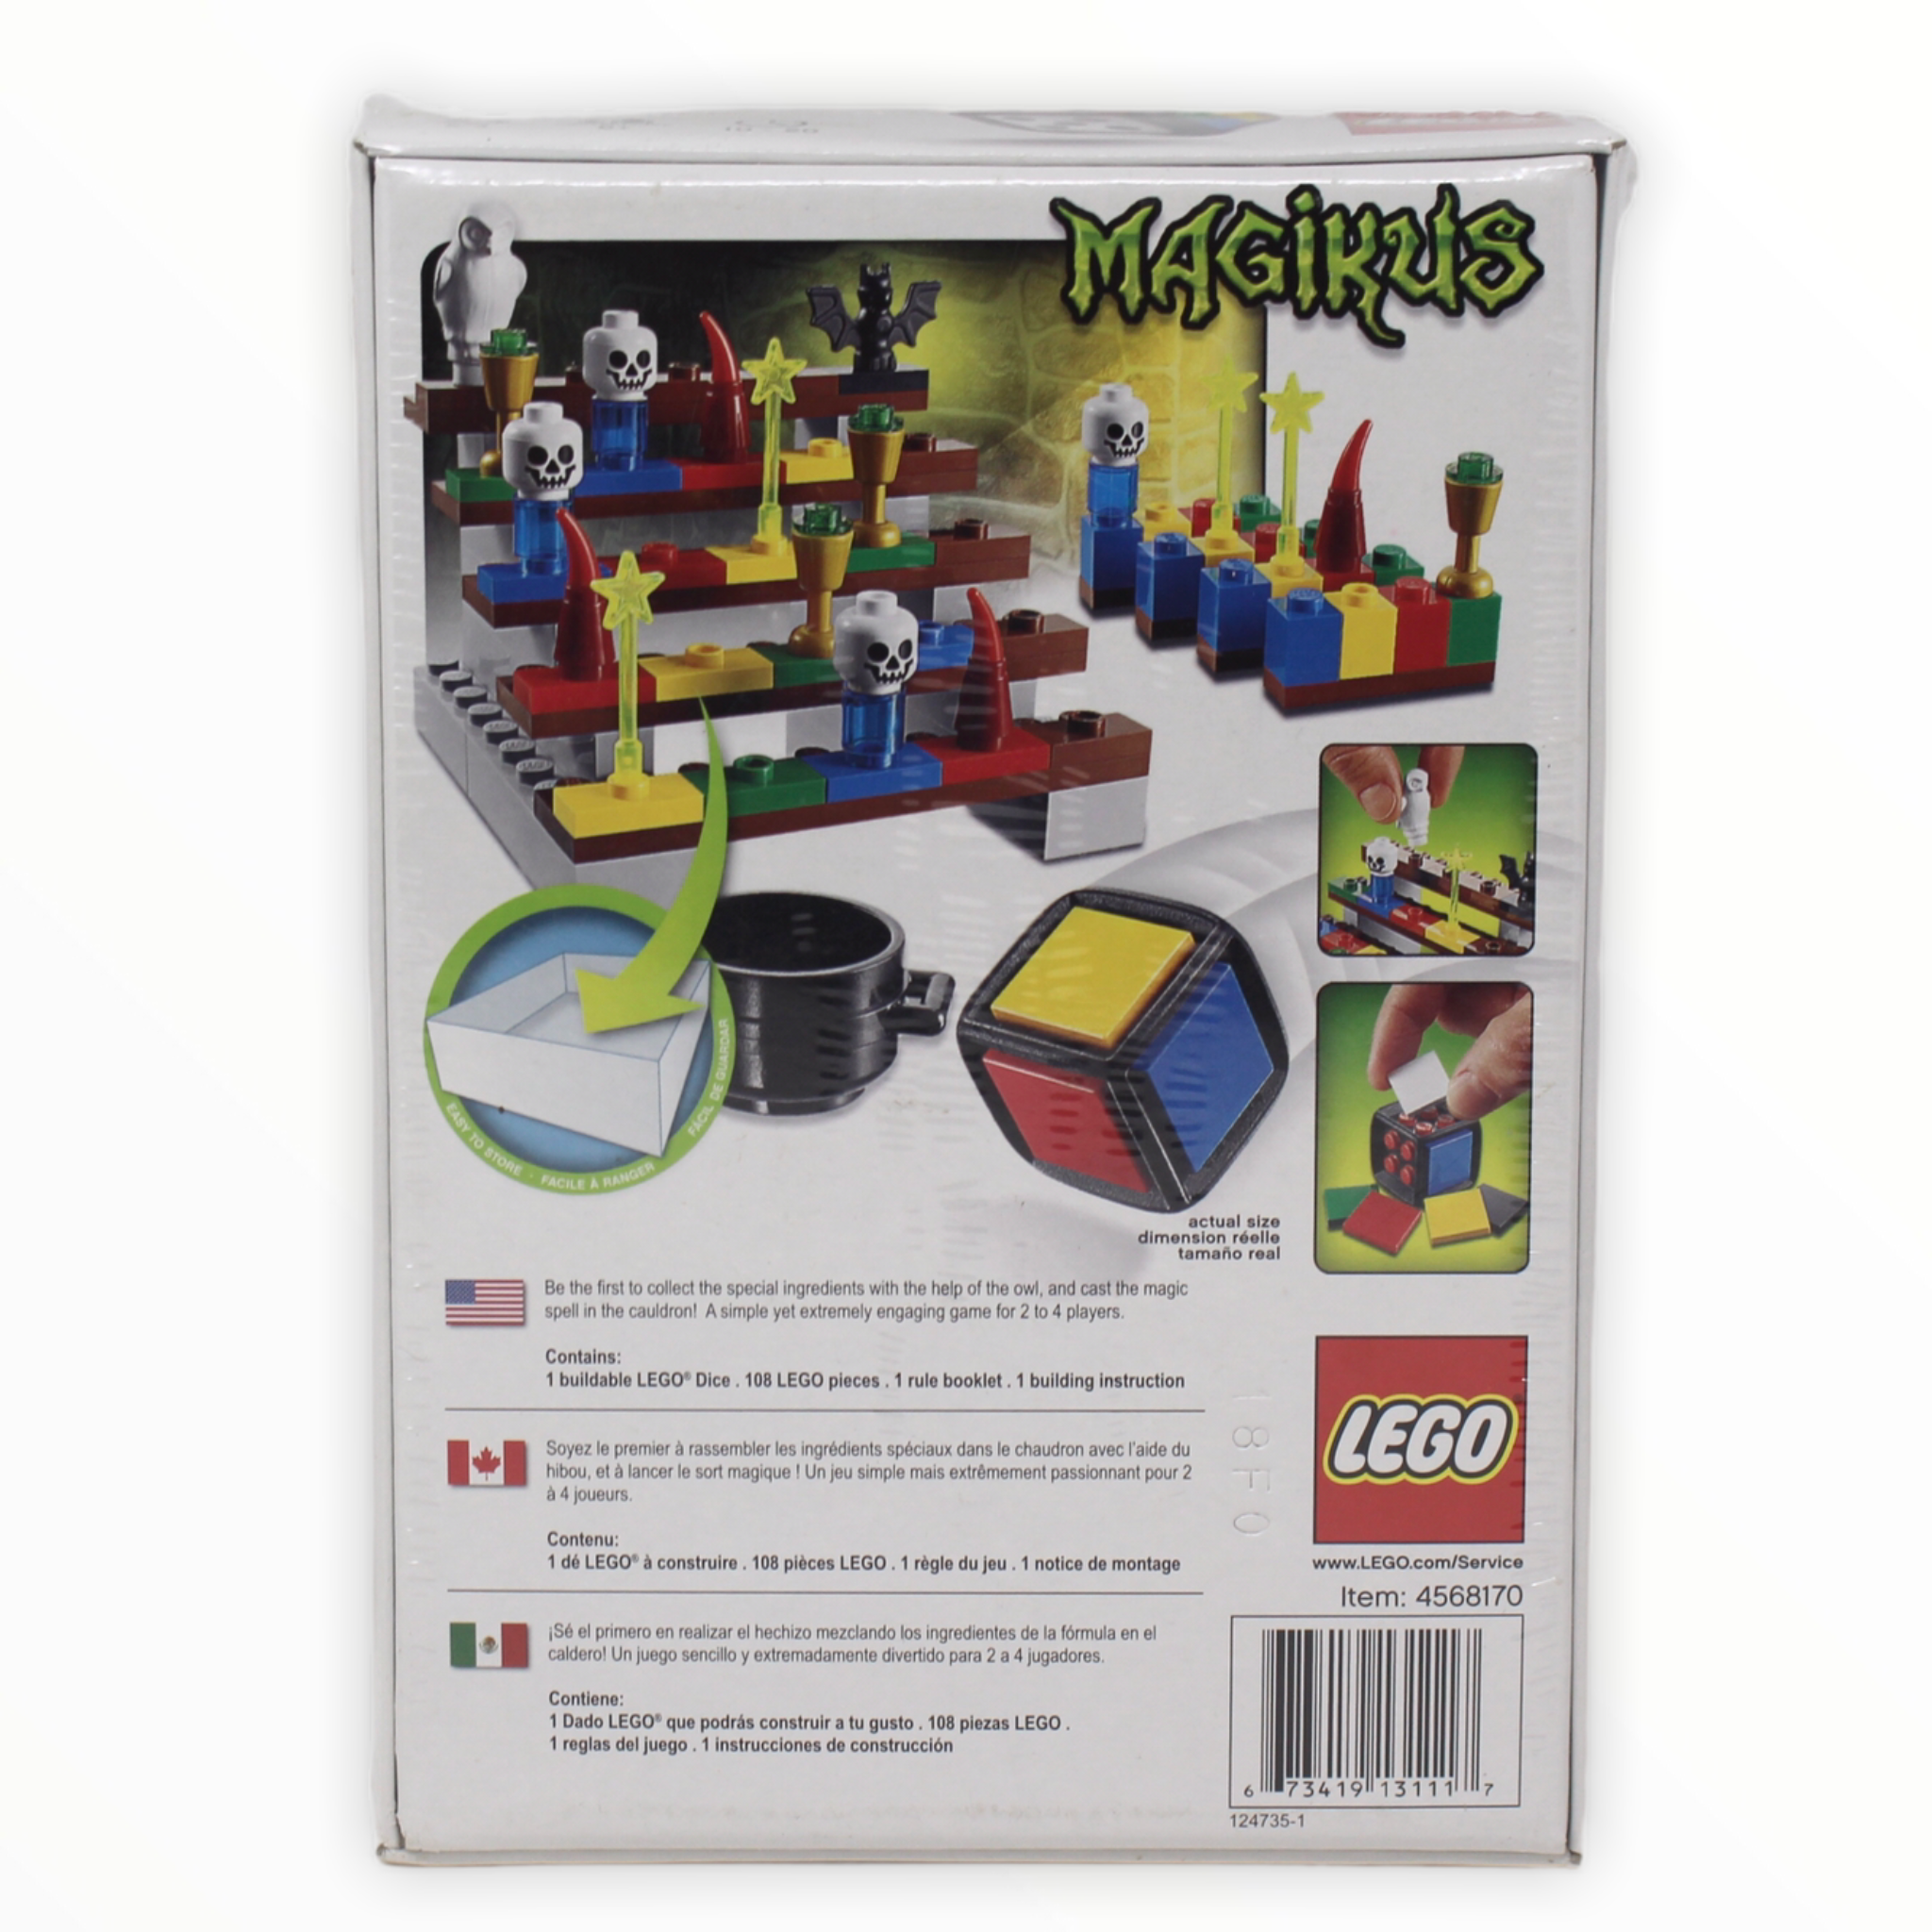 Retired Set 3836 LEGO Magikus